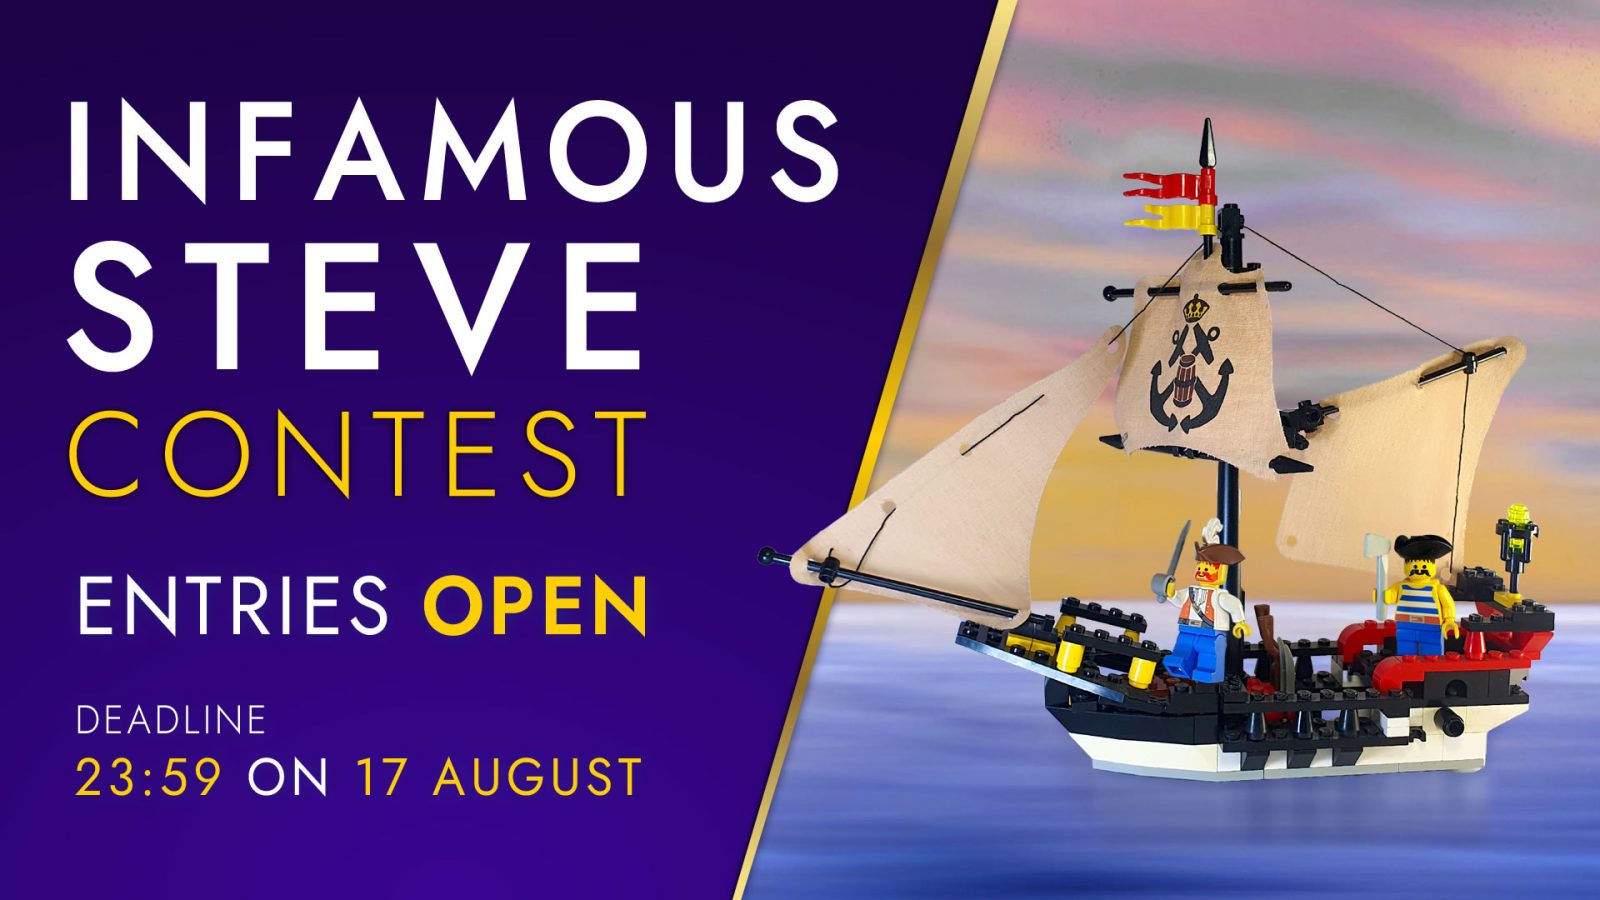 The Infamous Steve Contest - Entries OPEN until August 17